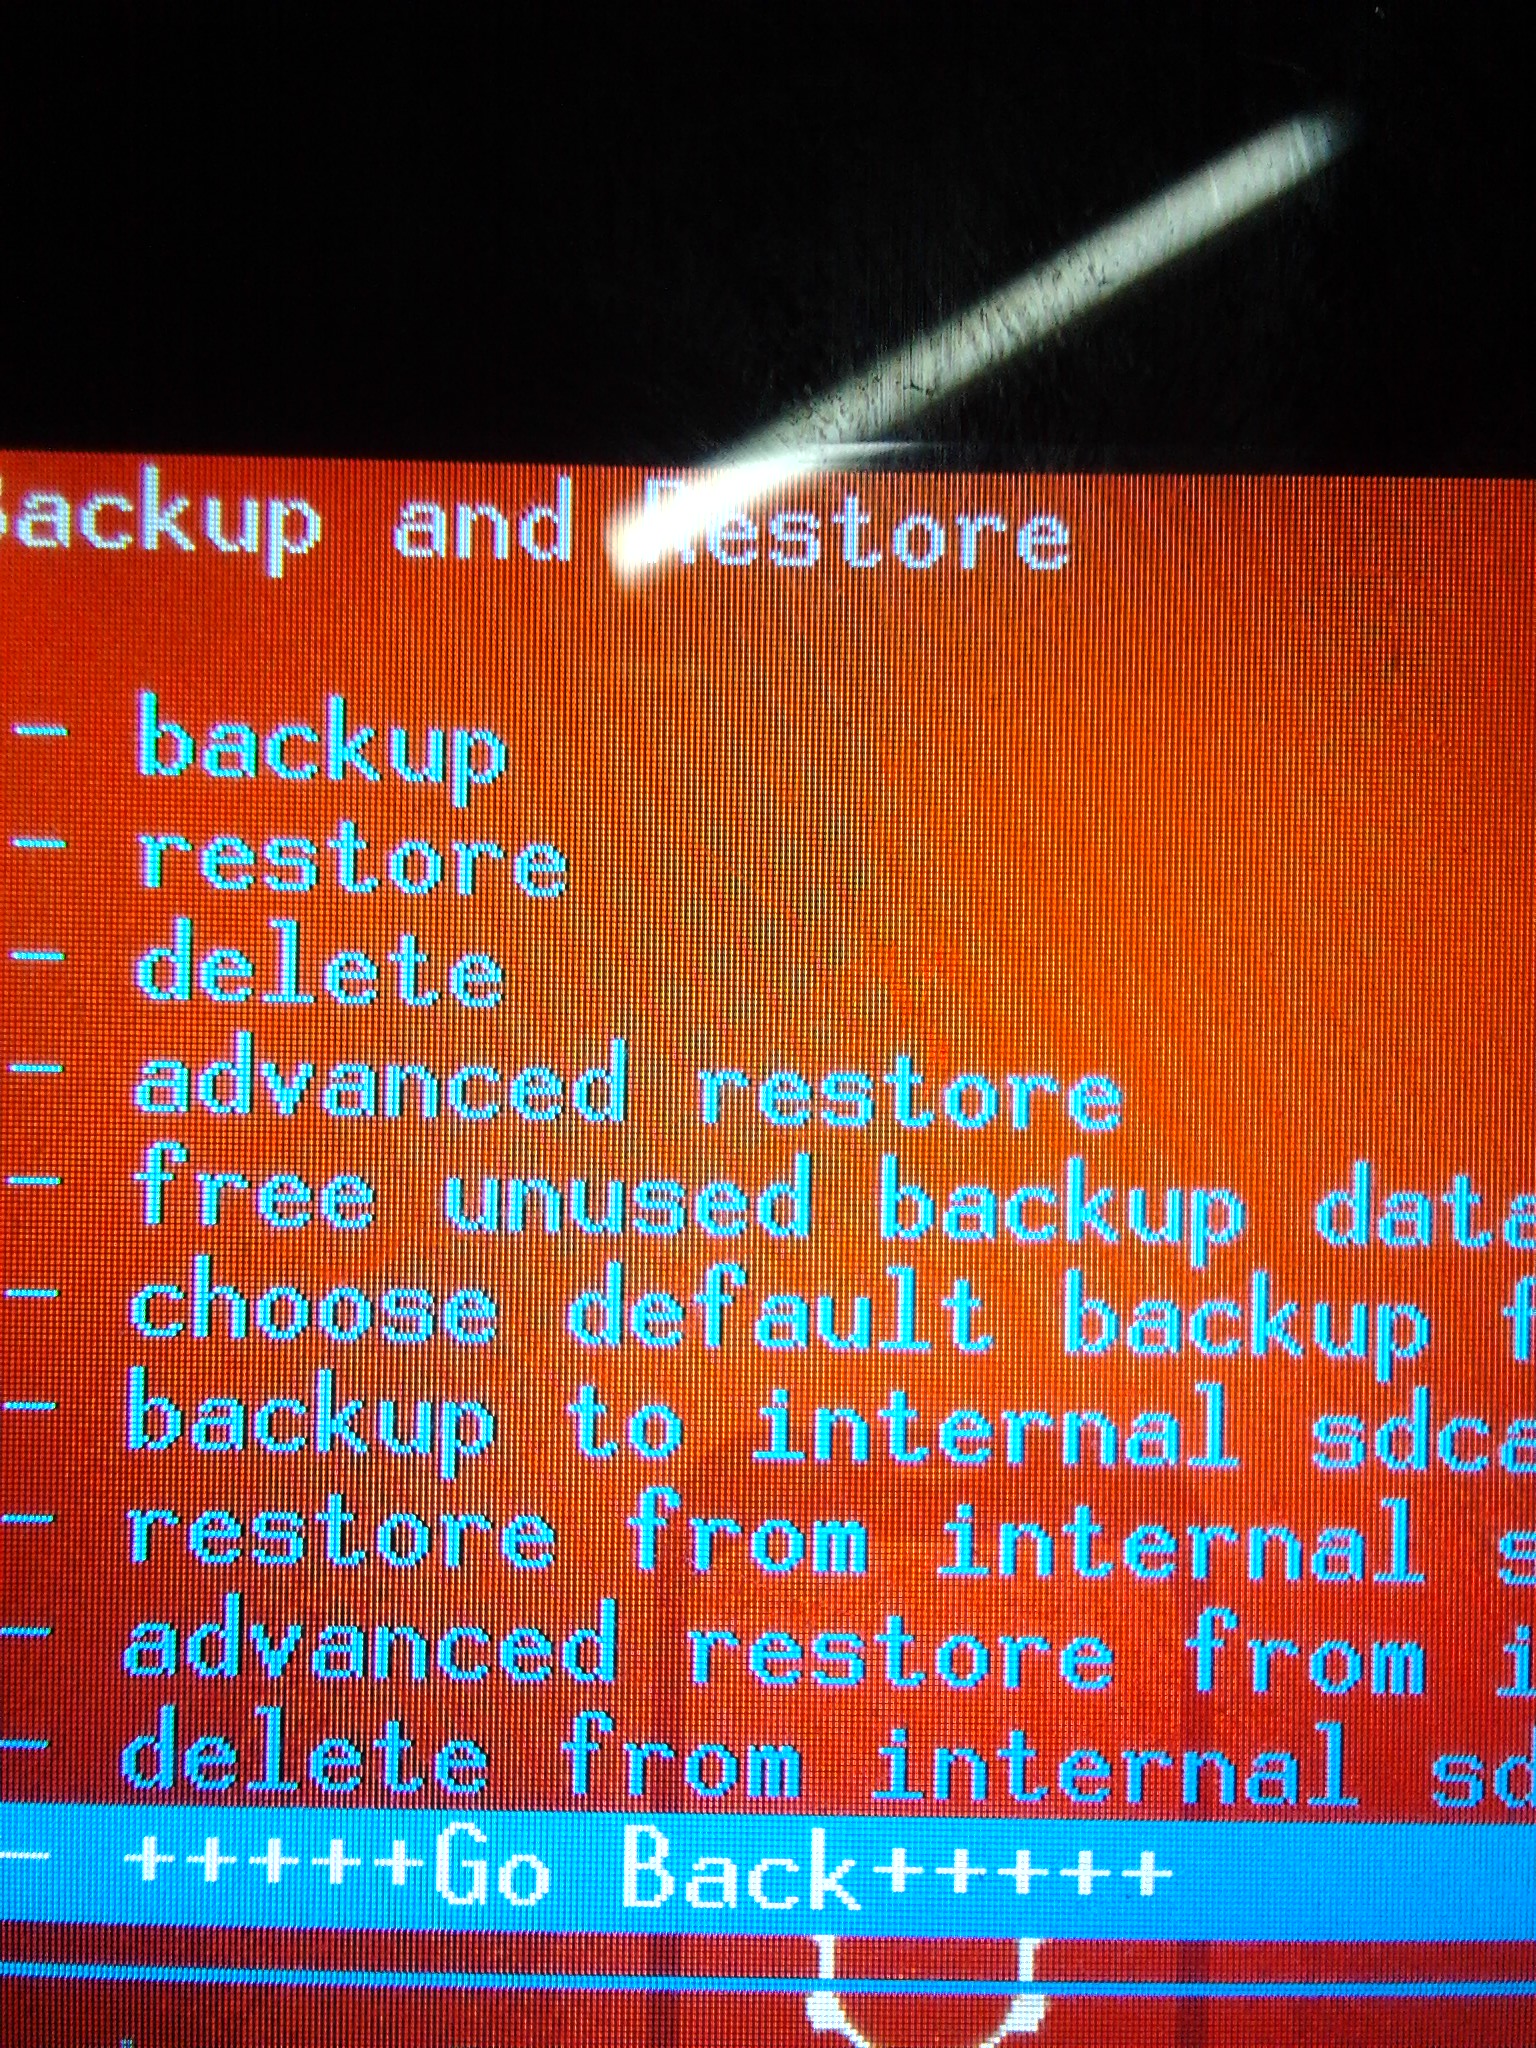 gp-backup-restore-menu